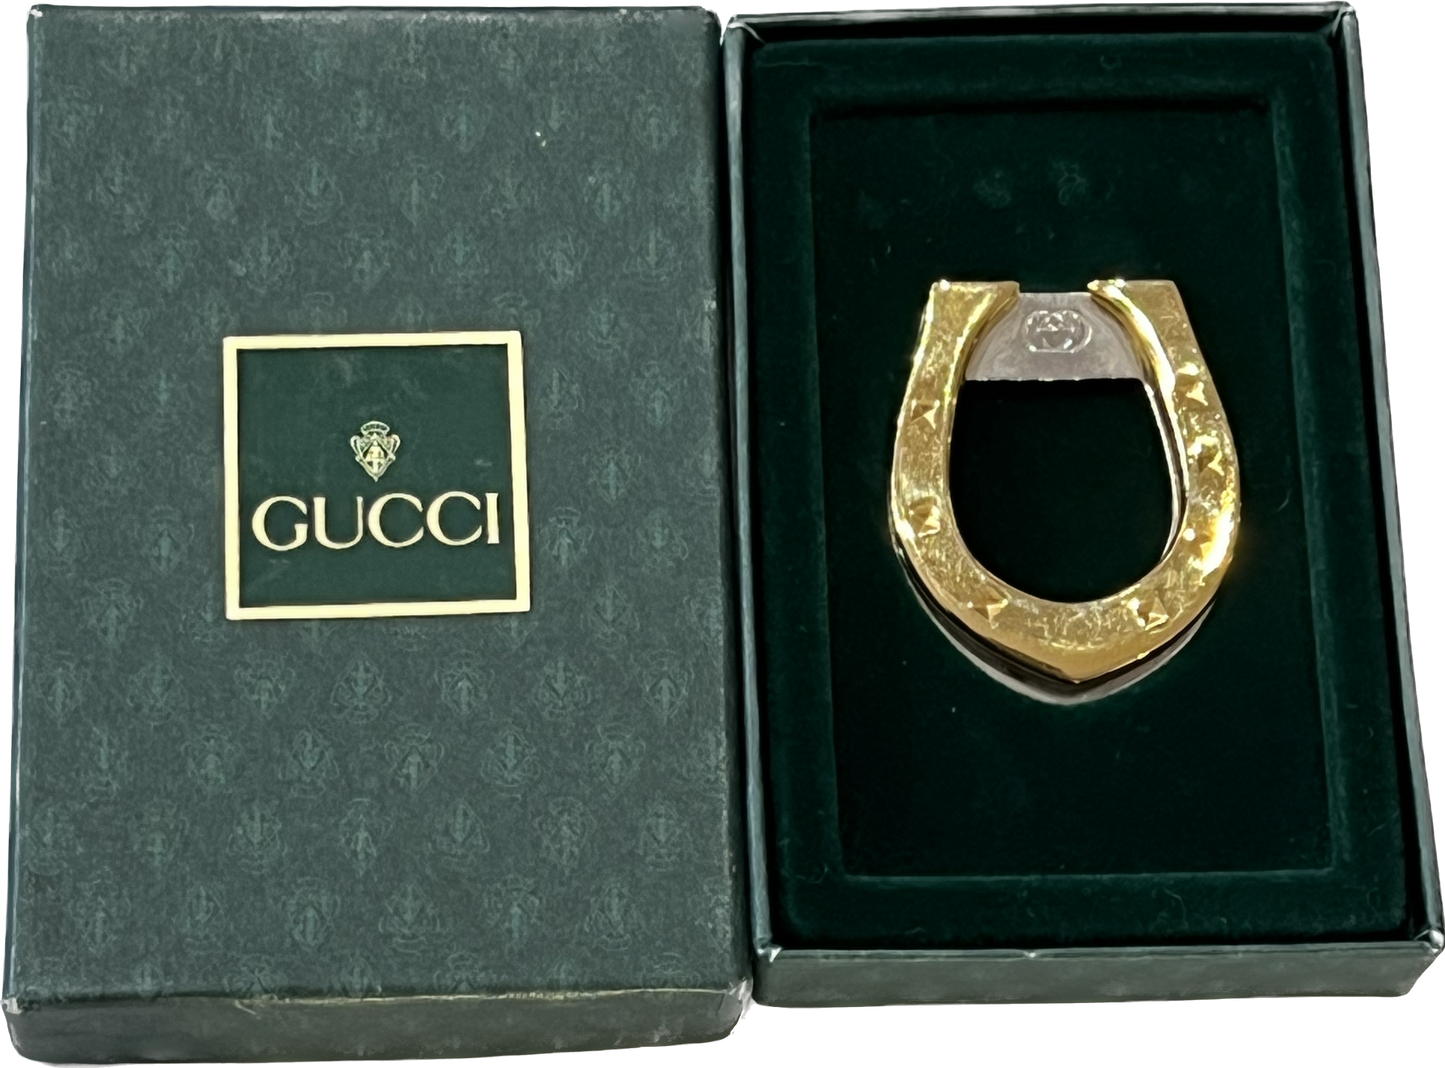 Vintage Gucci money clip